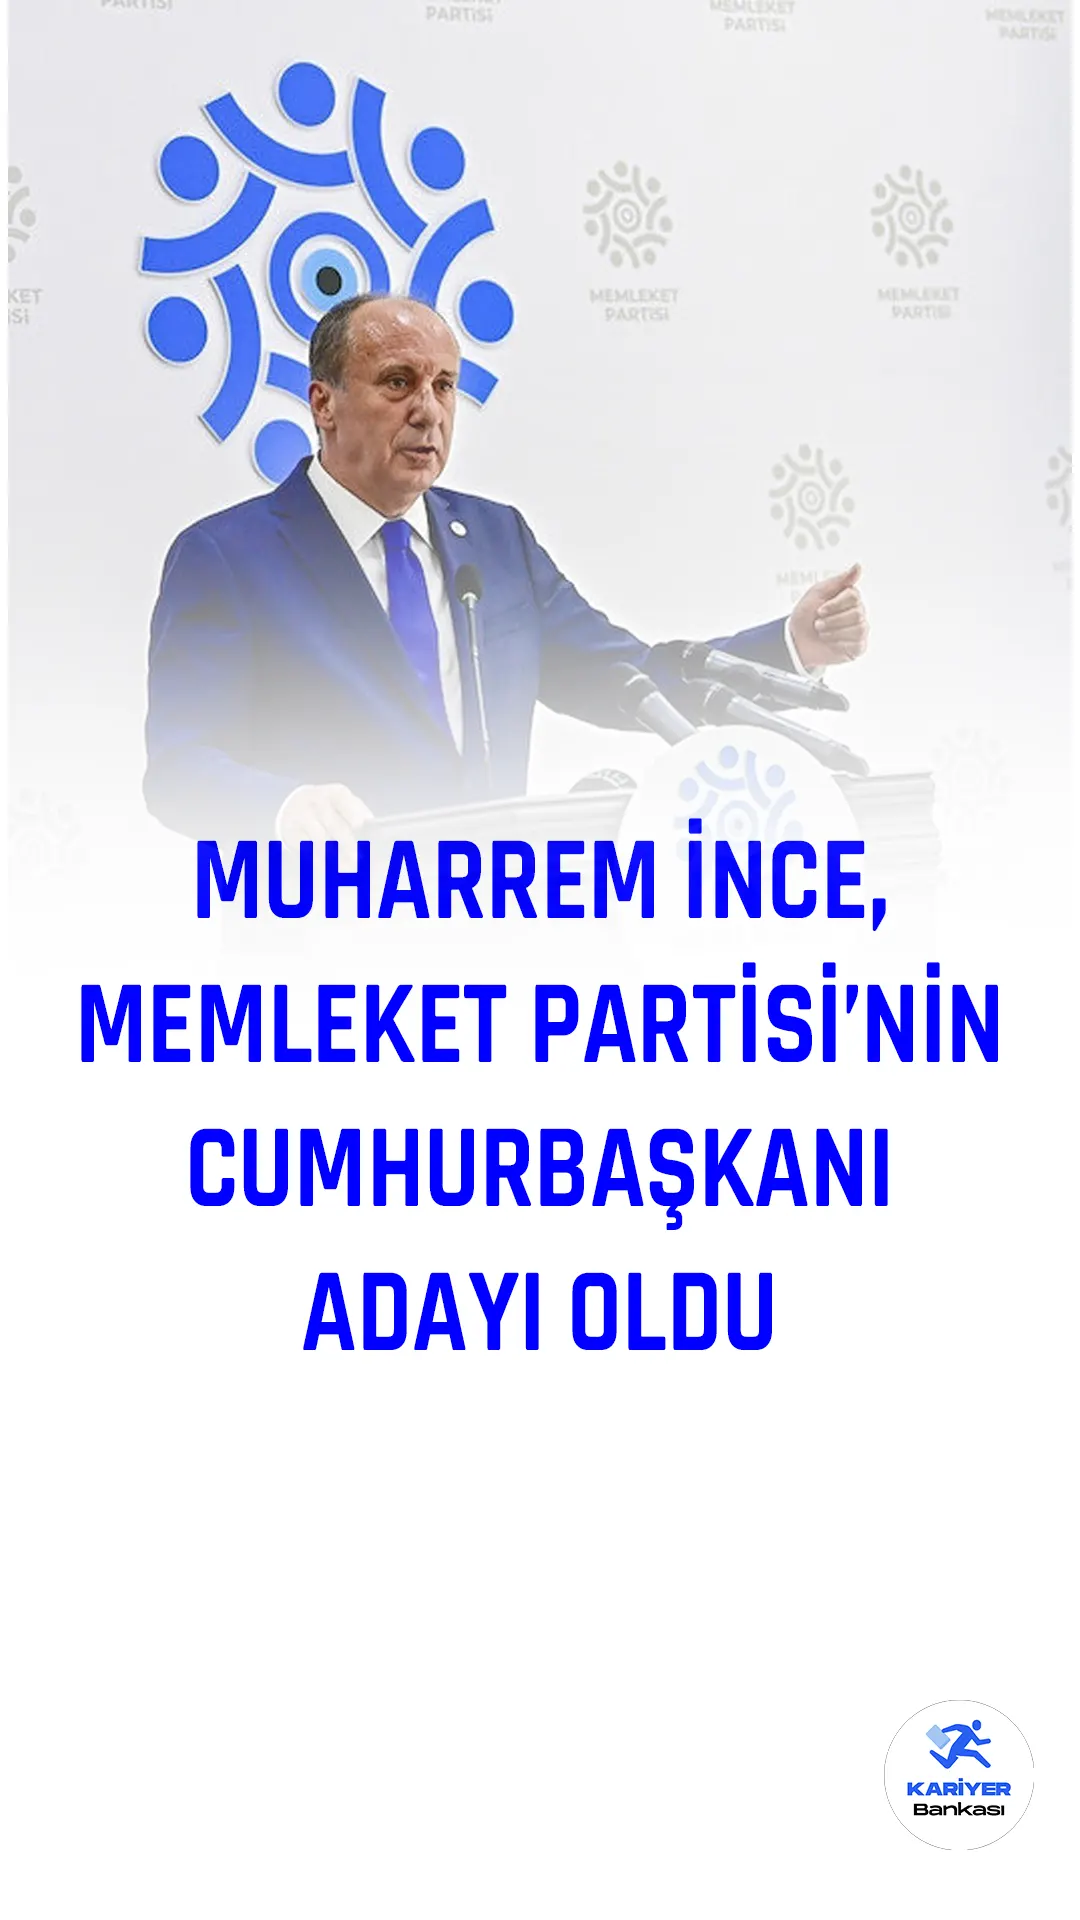 Muharrem İnce'nin genel başkanı olduğu Memleket Partisi, 2023 yılında yapılacak Cumhurbaşkanlığı seçimleri için adayını belirledi.